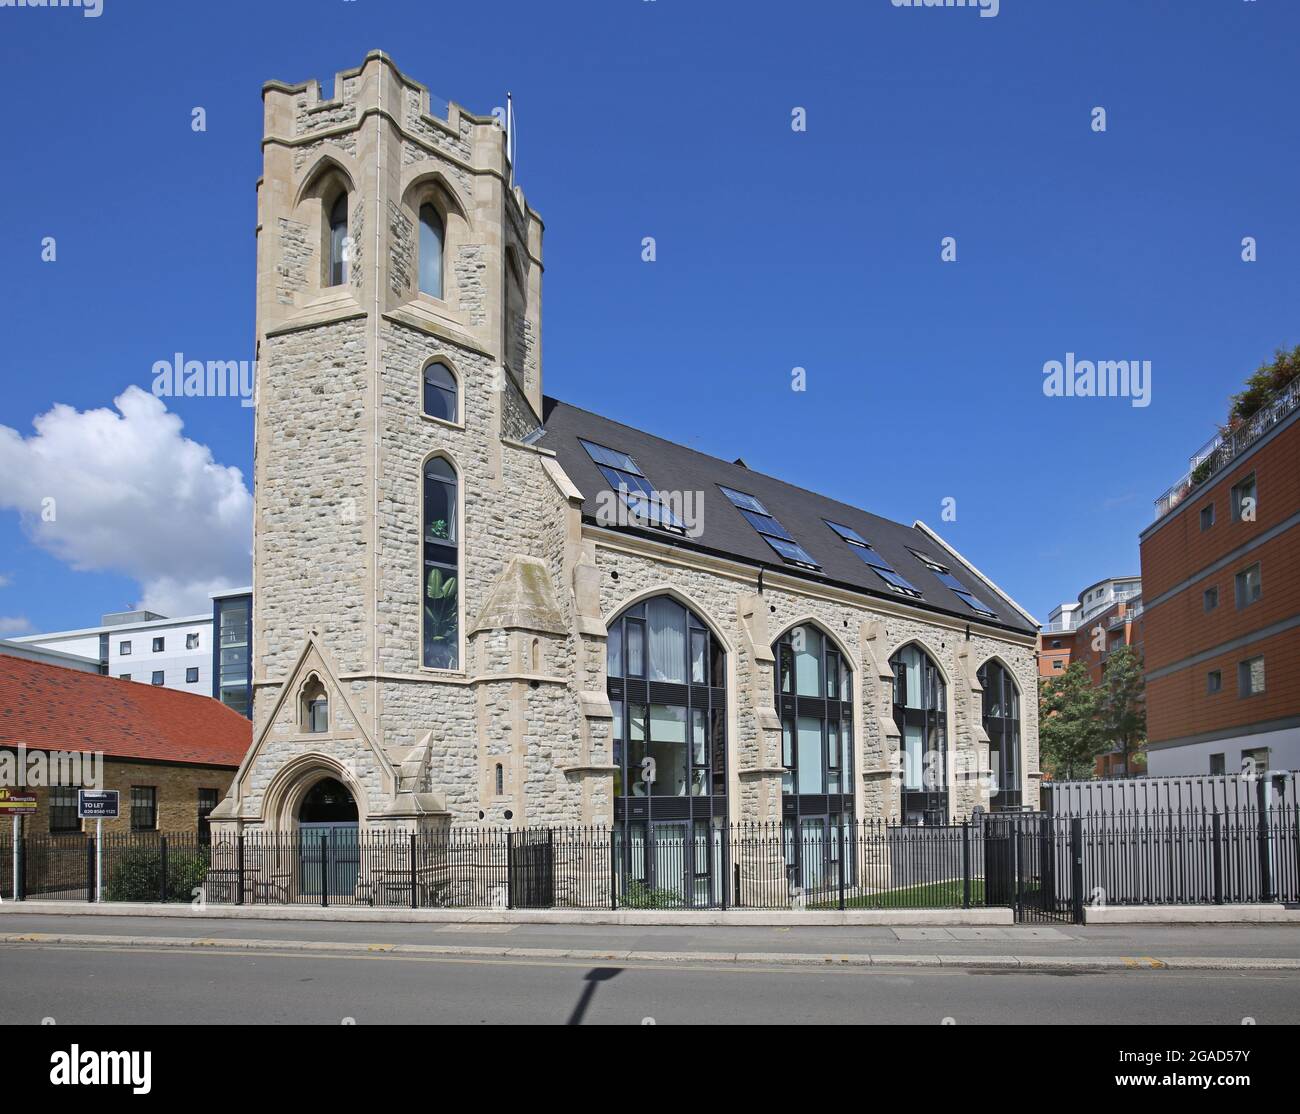 St Georges Church, Kew Bridge Road, Brentford, Regno Unito. La chiesa vittoriana è stata convertita ad uso residenziale. Ospita 21 appartamenti di lusso vicino al Tamigi Foto Stock